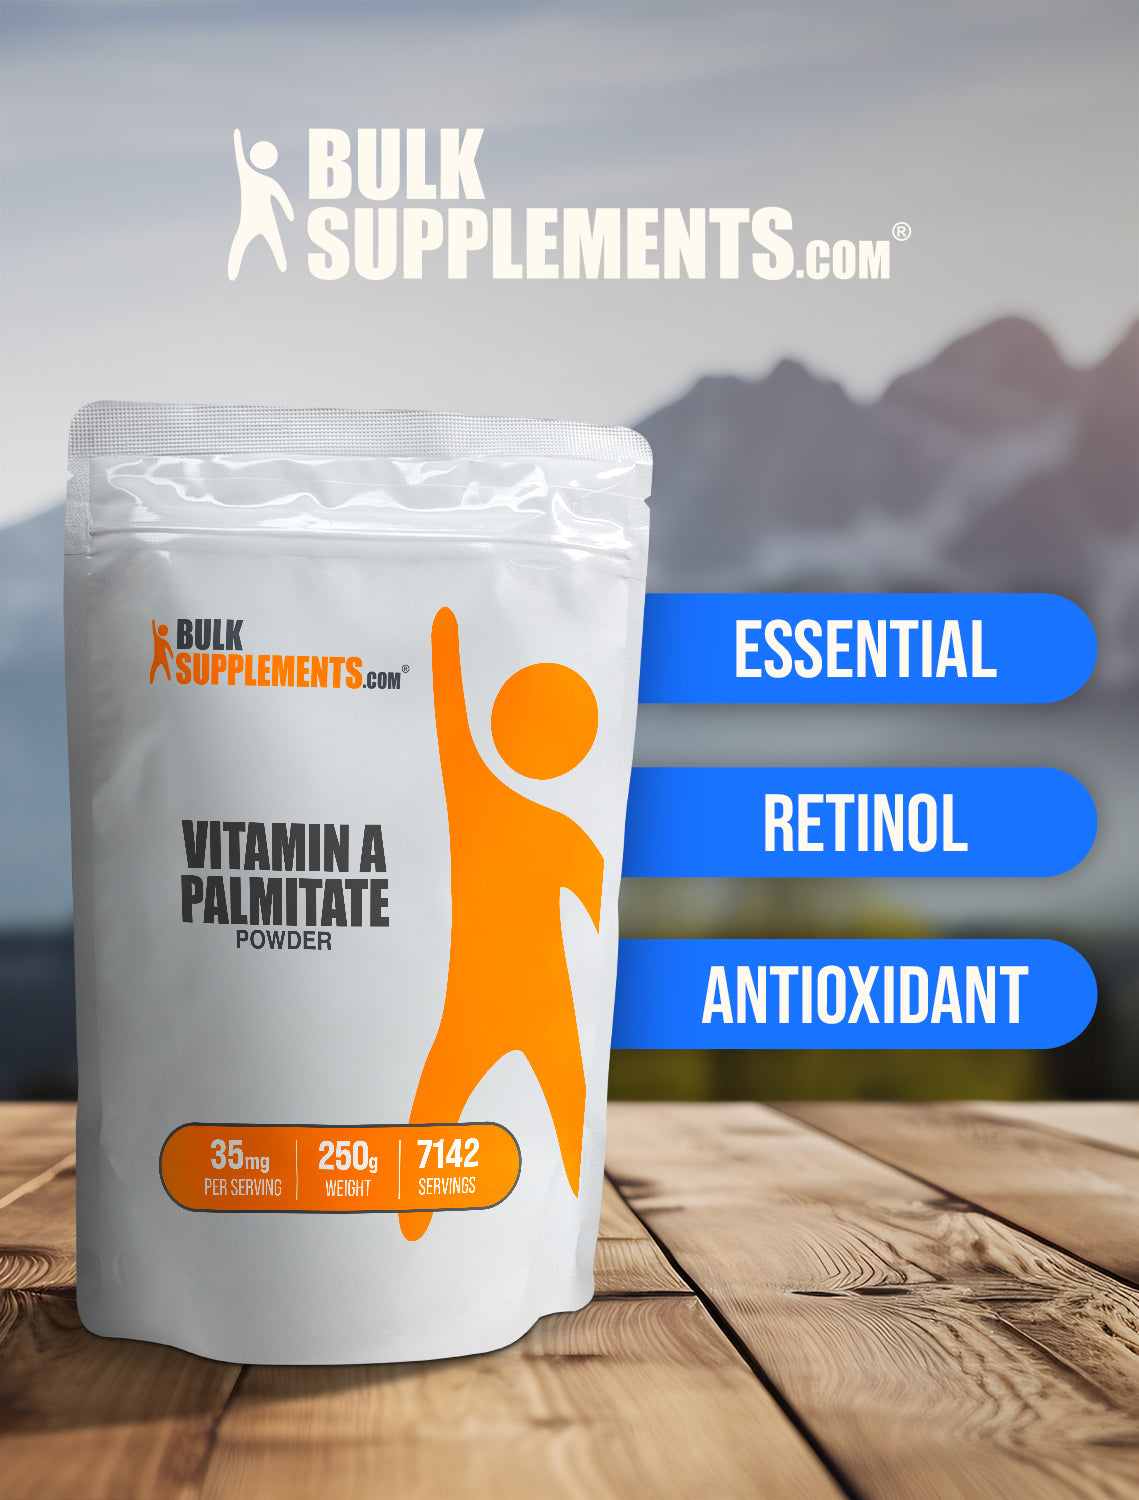 Vitamin A Palmitate powder keyword image 250g